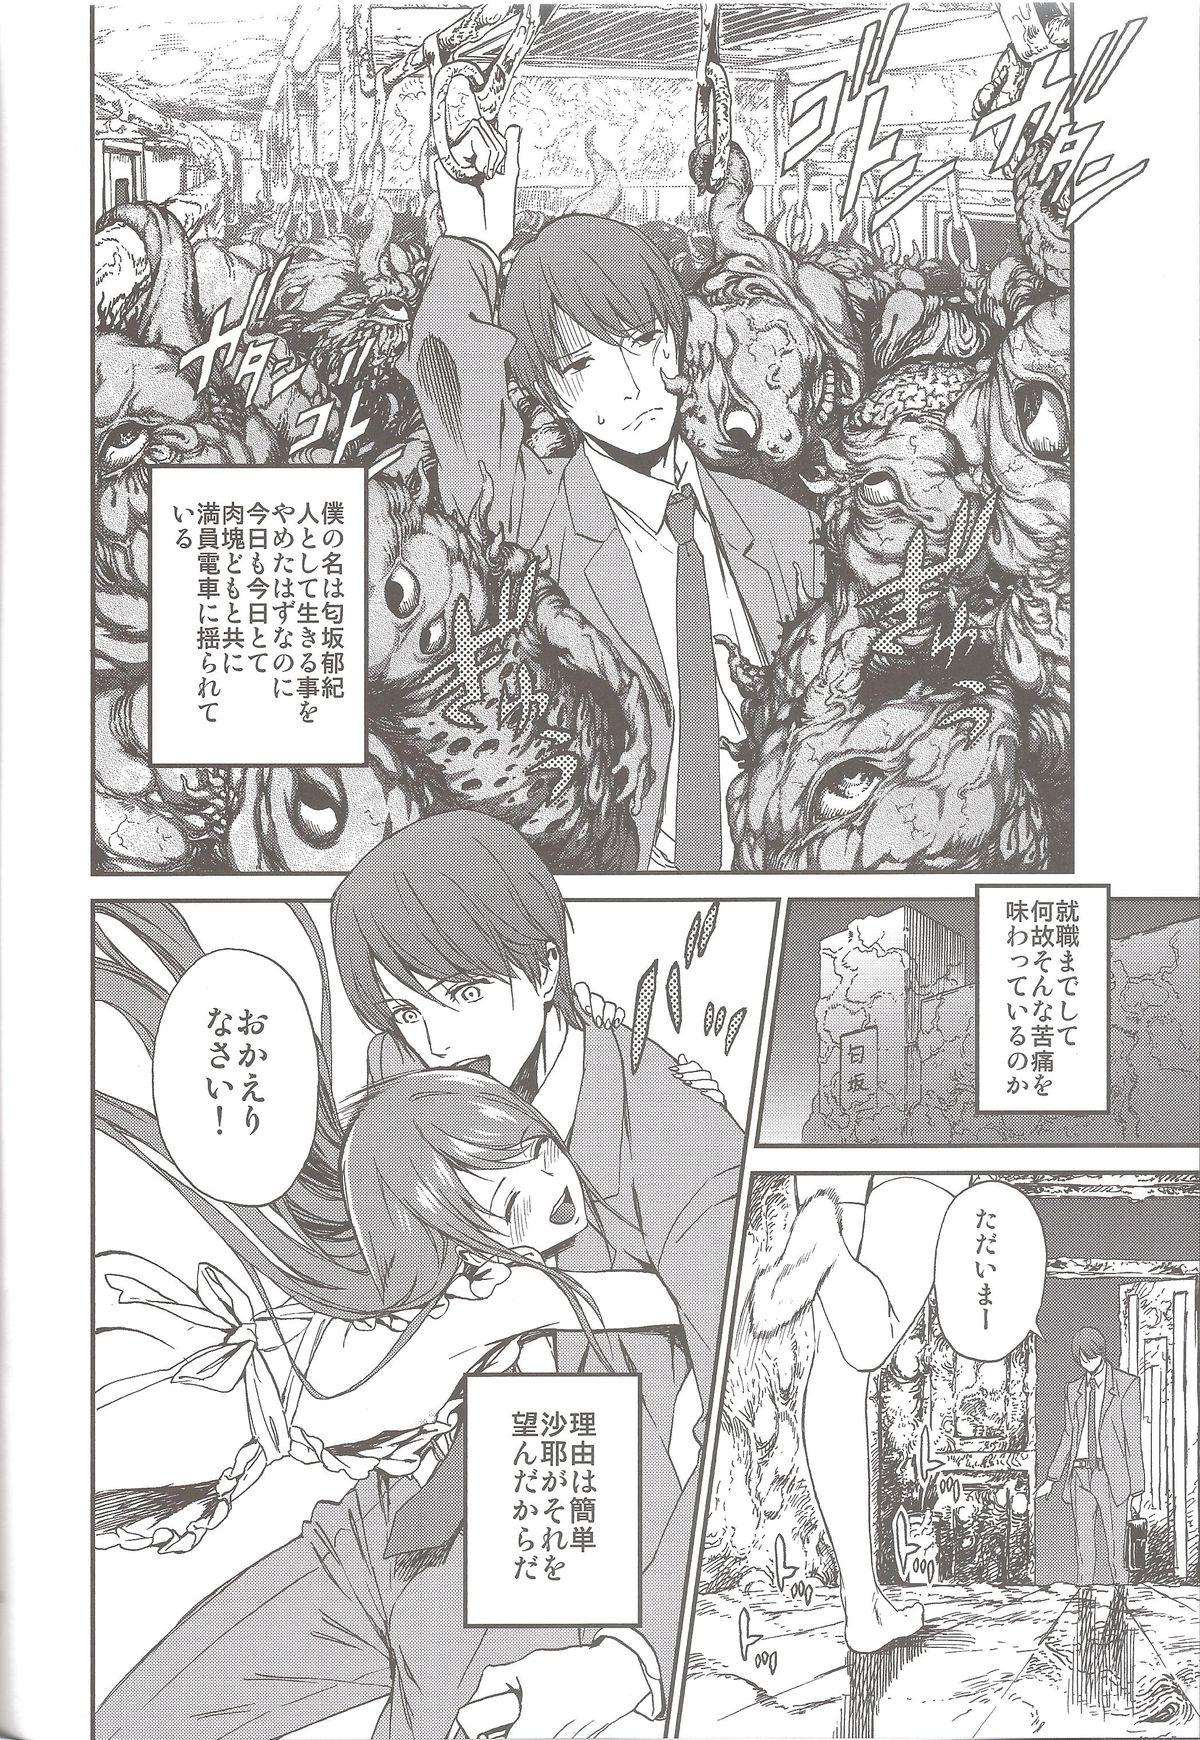 Best Blow Job Ever Okaerinasai - Saya no uta Step Mom - Page 6